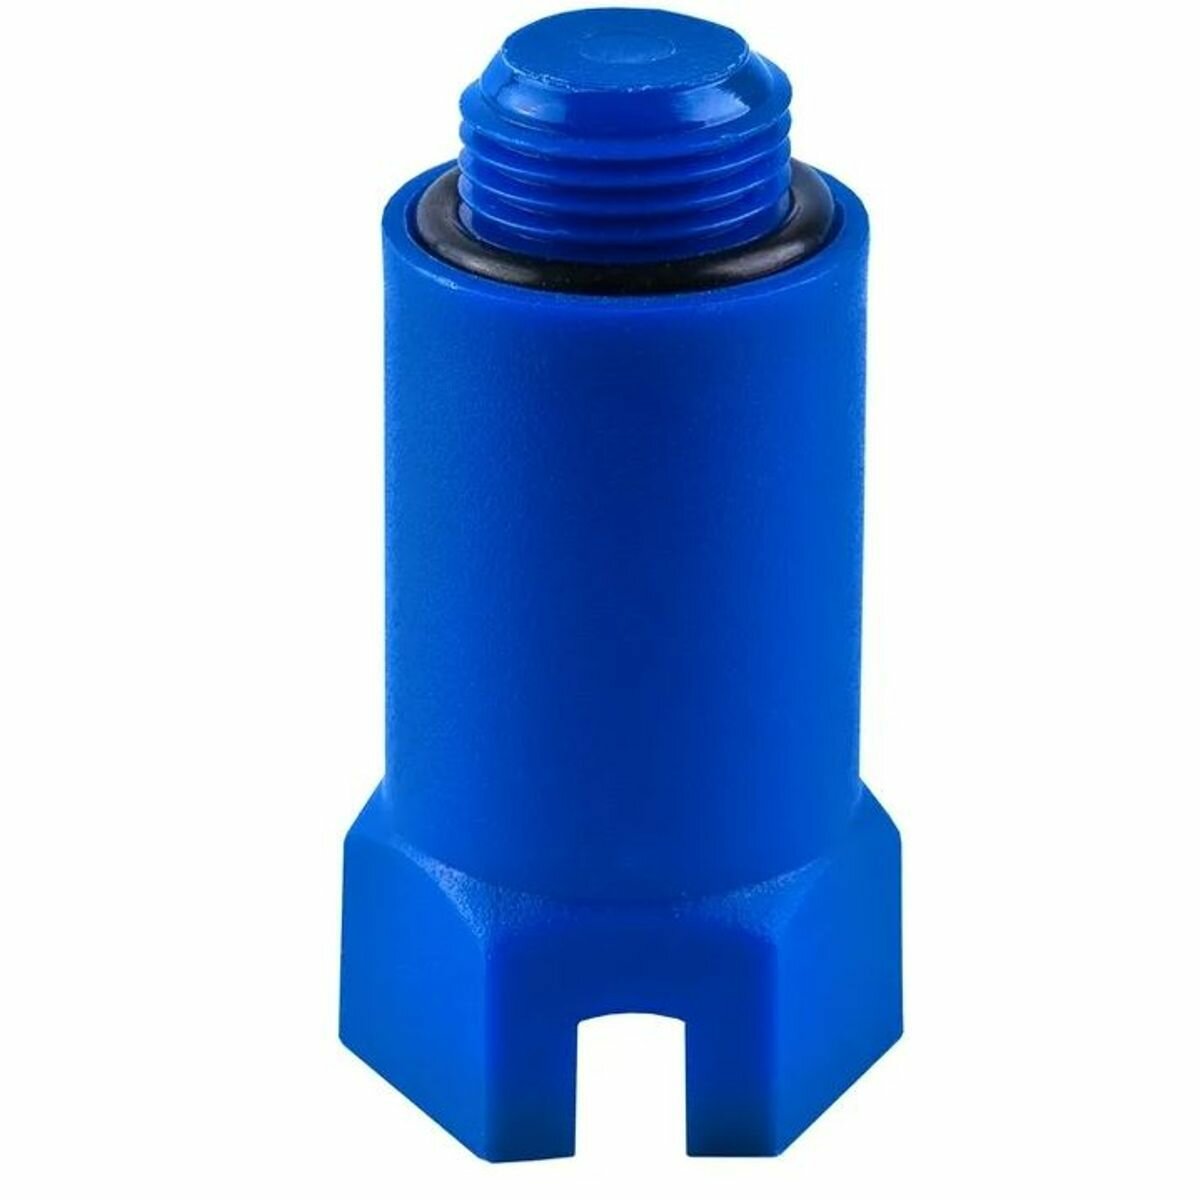 Заглушка (пробка) для водорозеток удлиненная с прокладкой тестовая 1/2, пластиковая, синяя, RTP